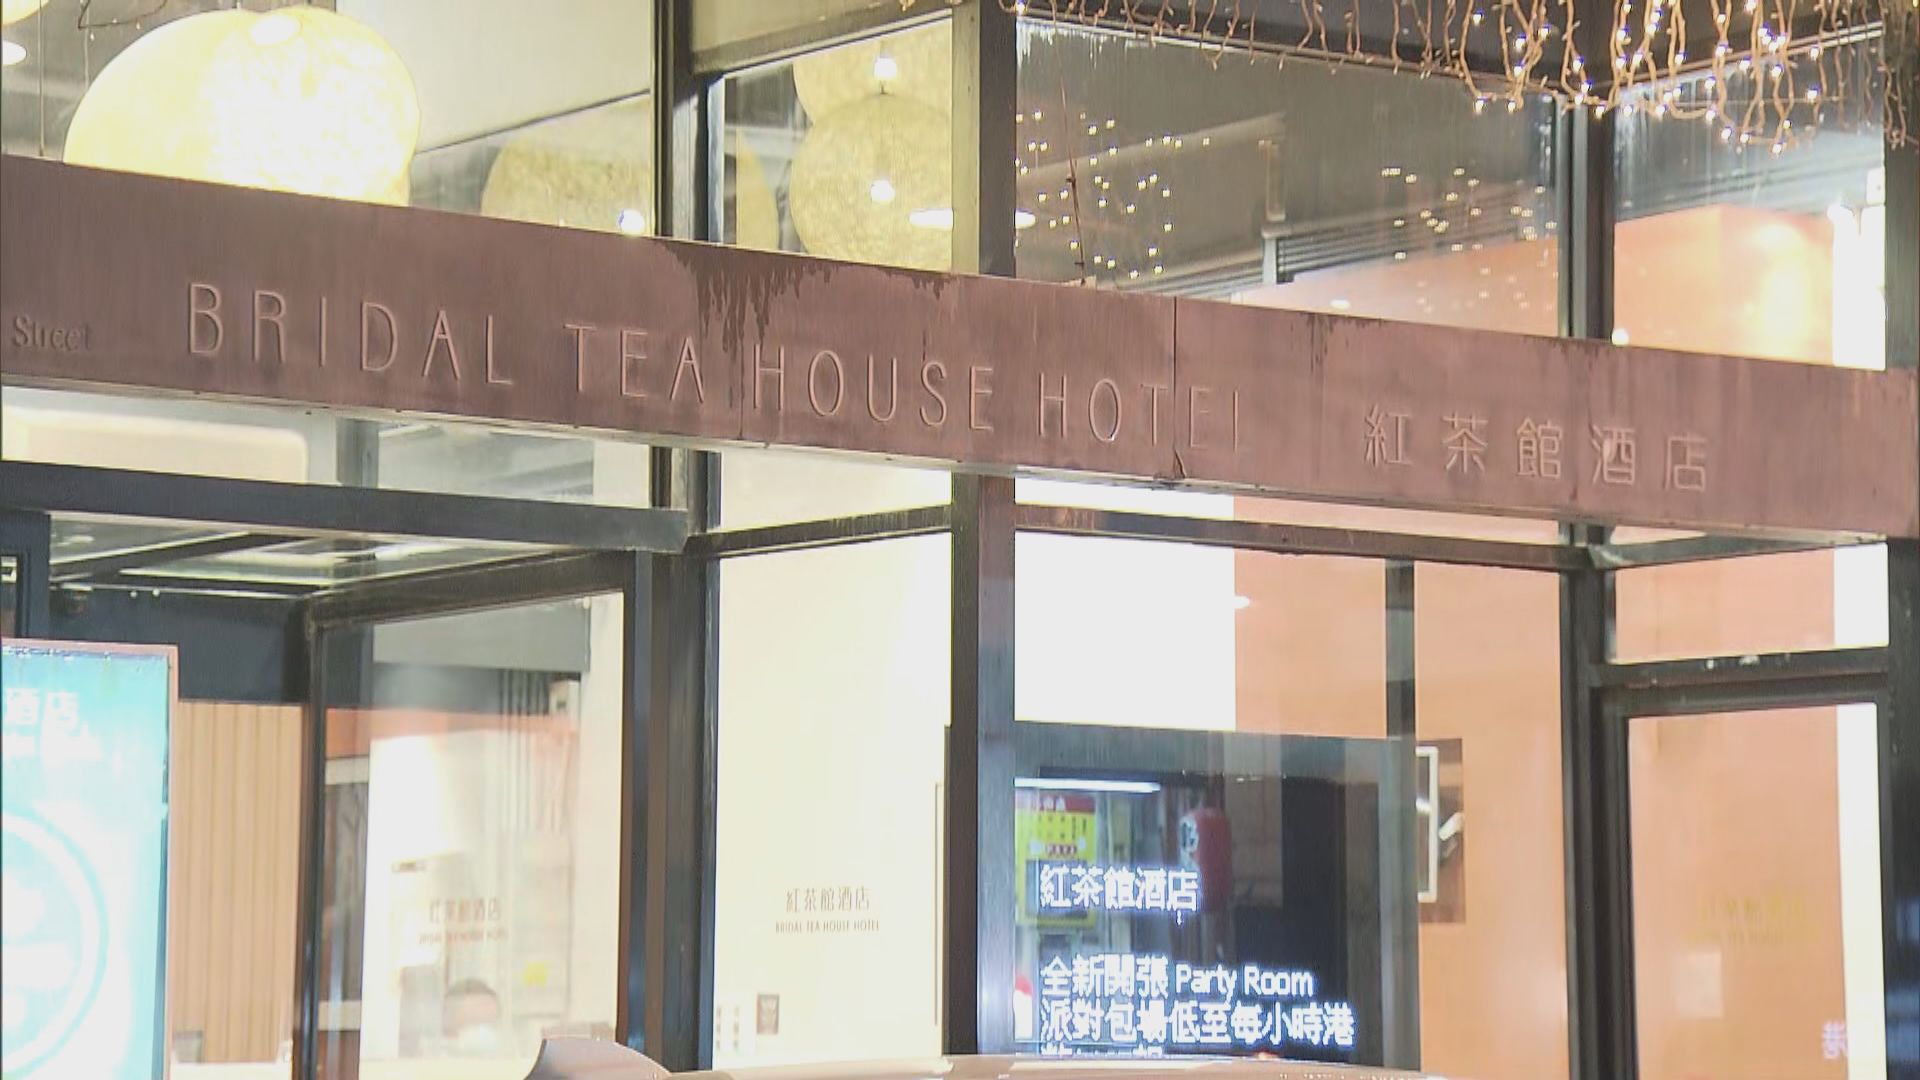 油麻地檢疫酒店清潔女工初確　香港仔利港中心須圍封強檢